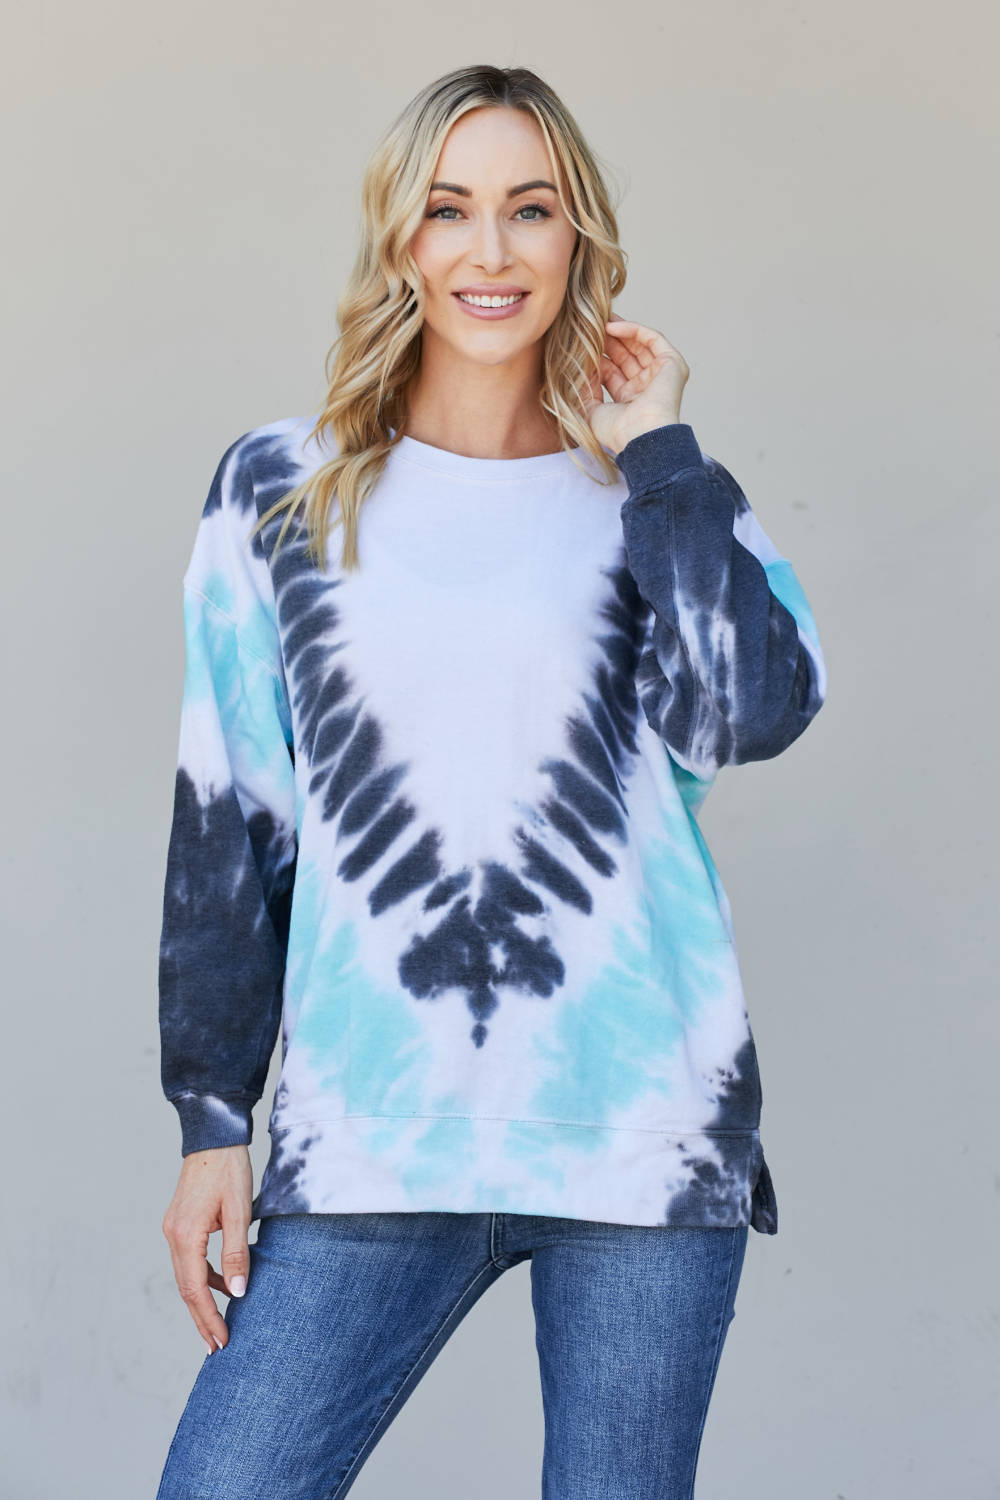 Sew In Love Full Size Tie-Dye Side Slit Sweatshirt